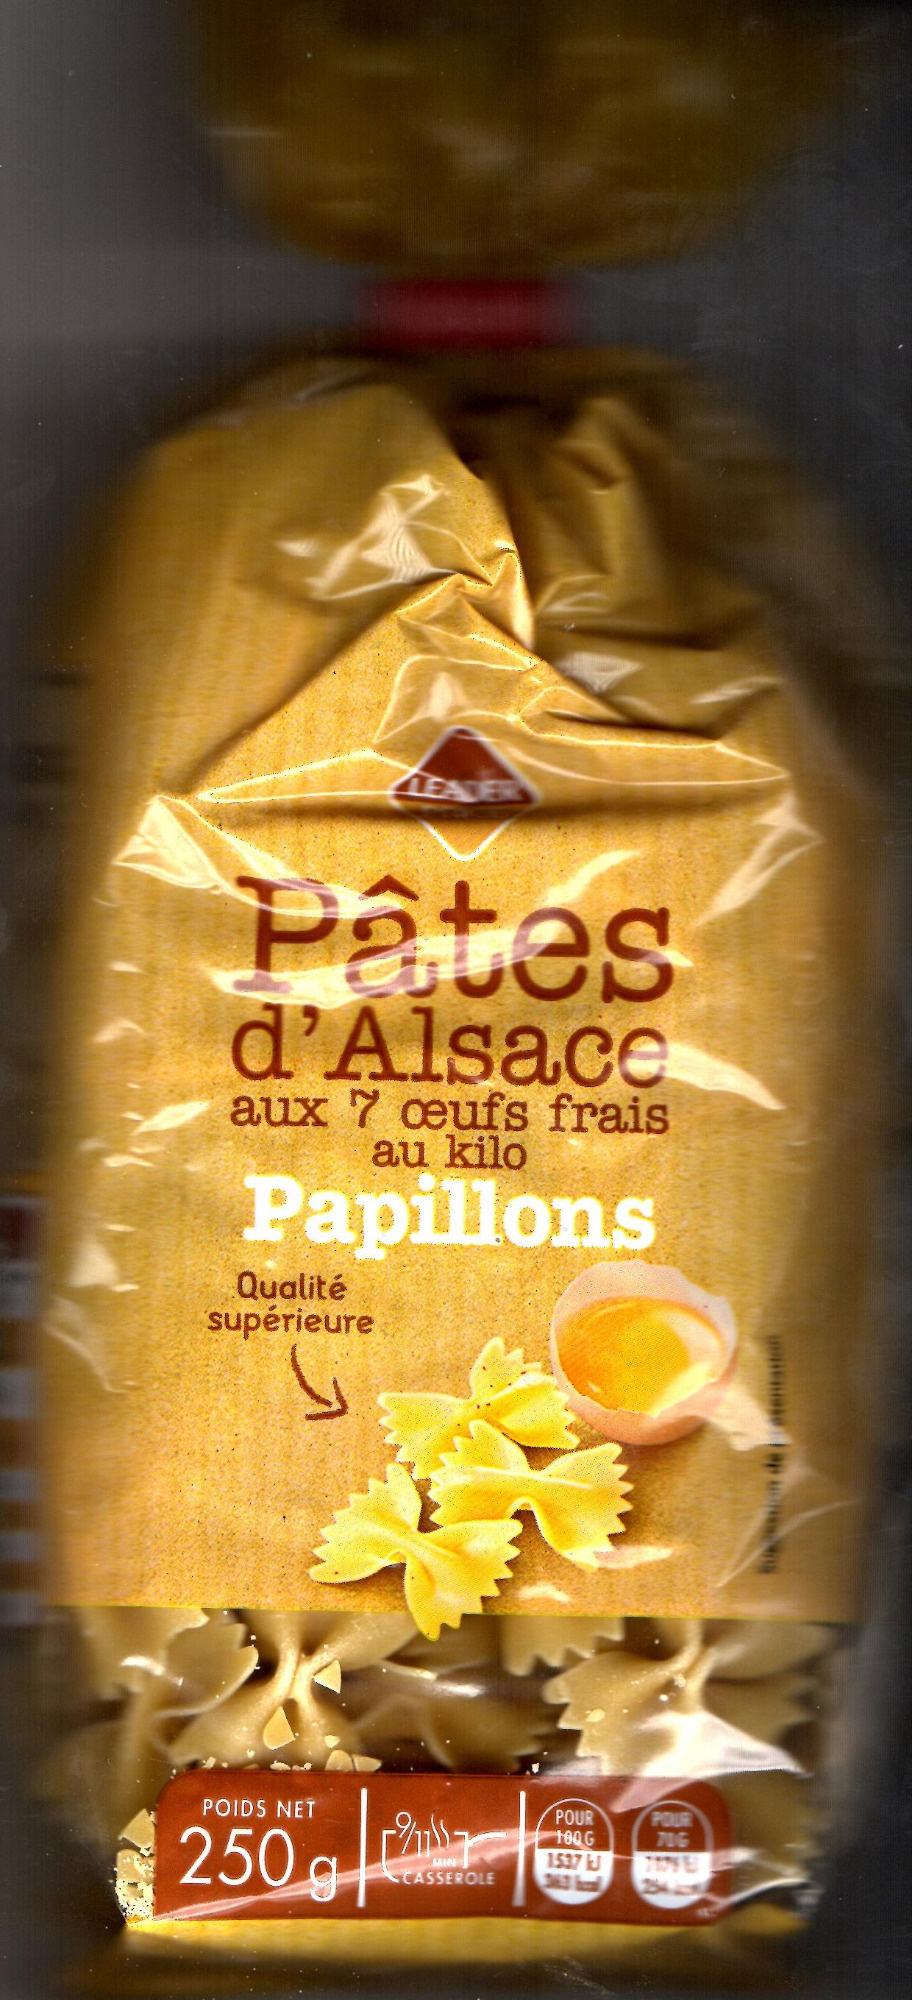 Papillons - Pâtes d'Alsace 7 Œufs Frais au Kilo - Produit